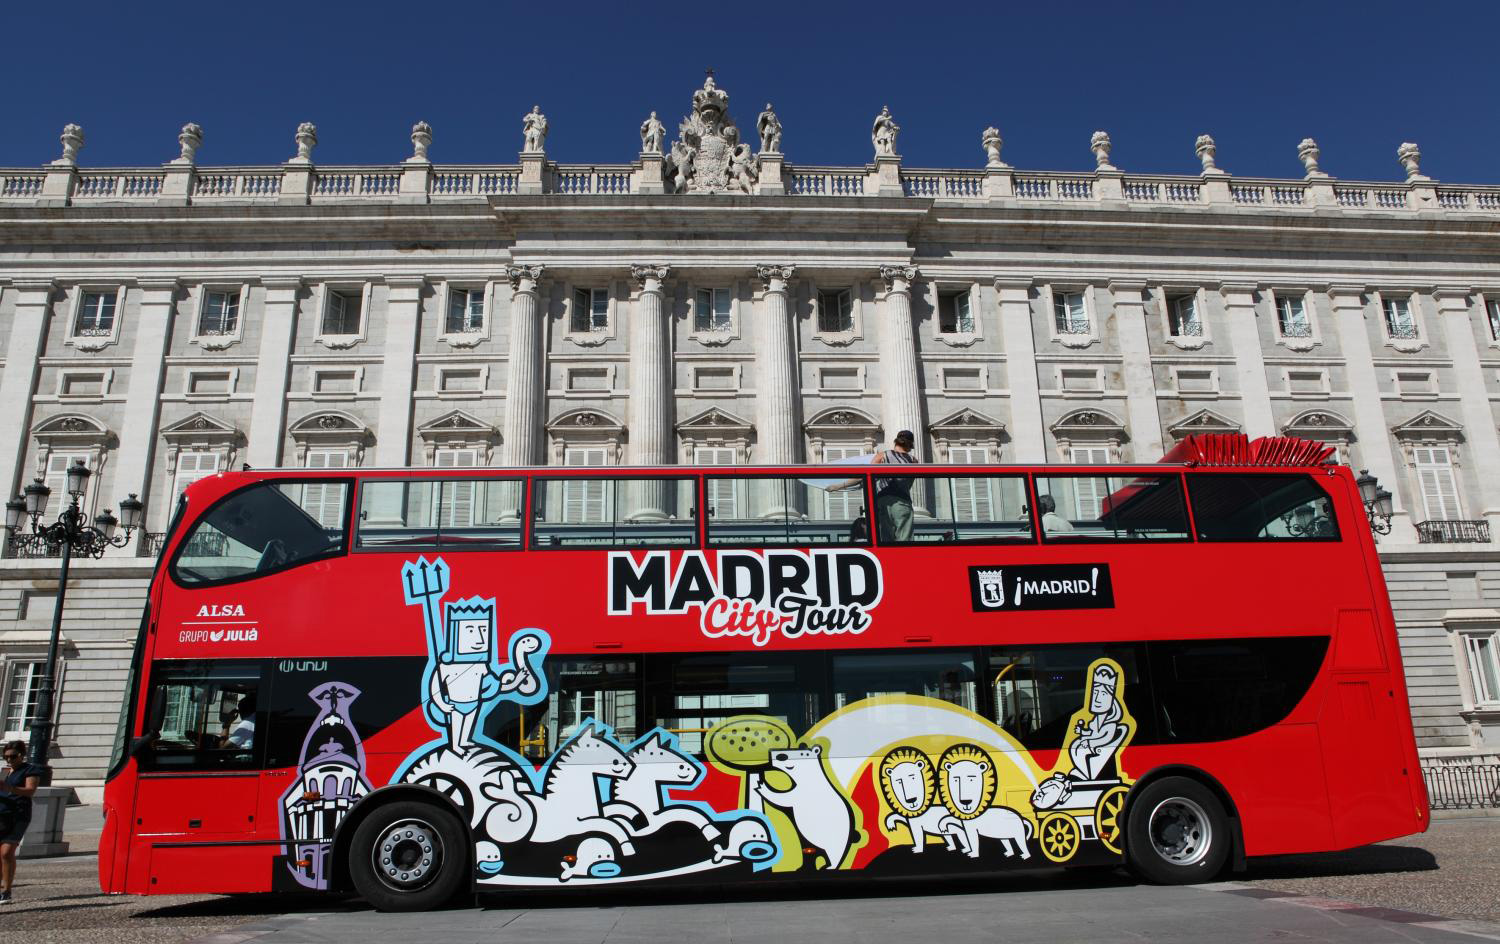 madrid bus tour deals